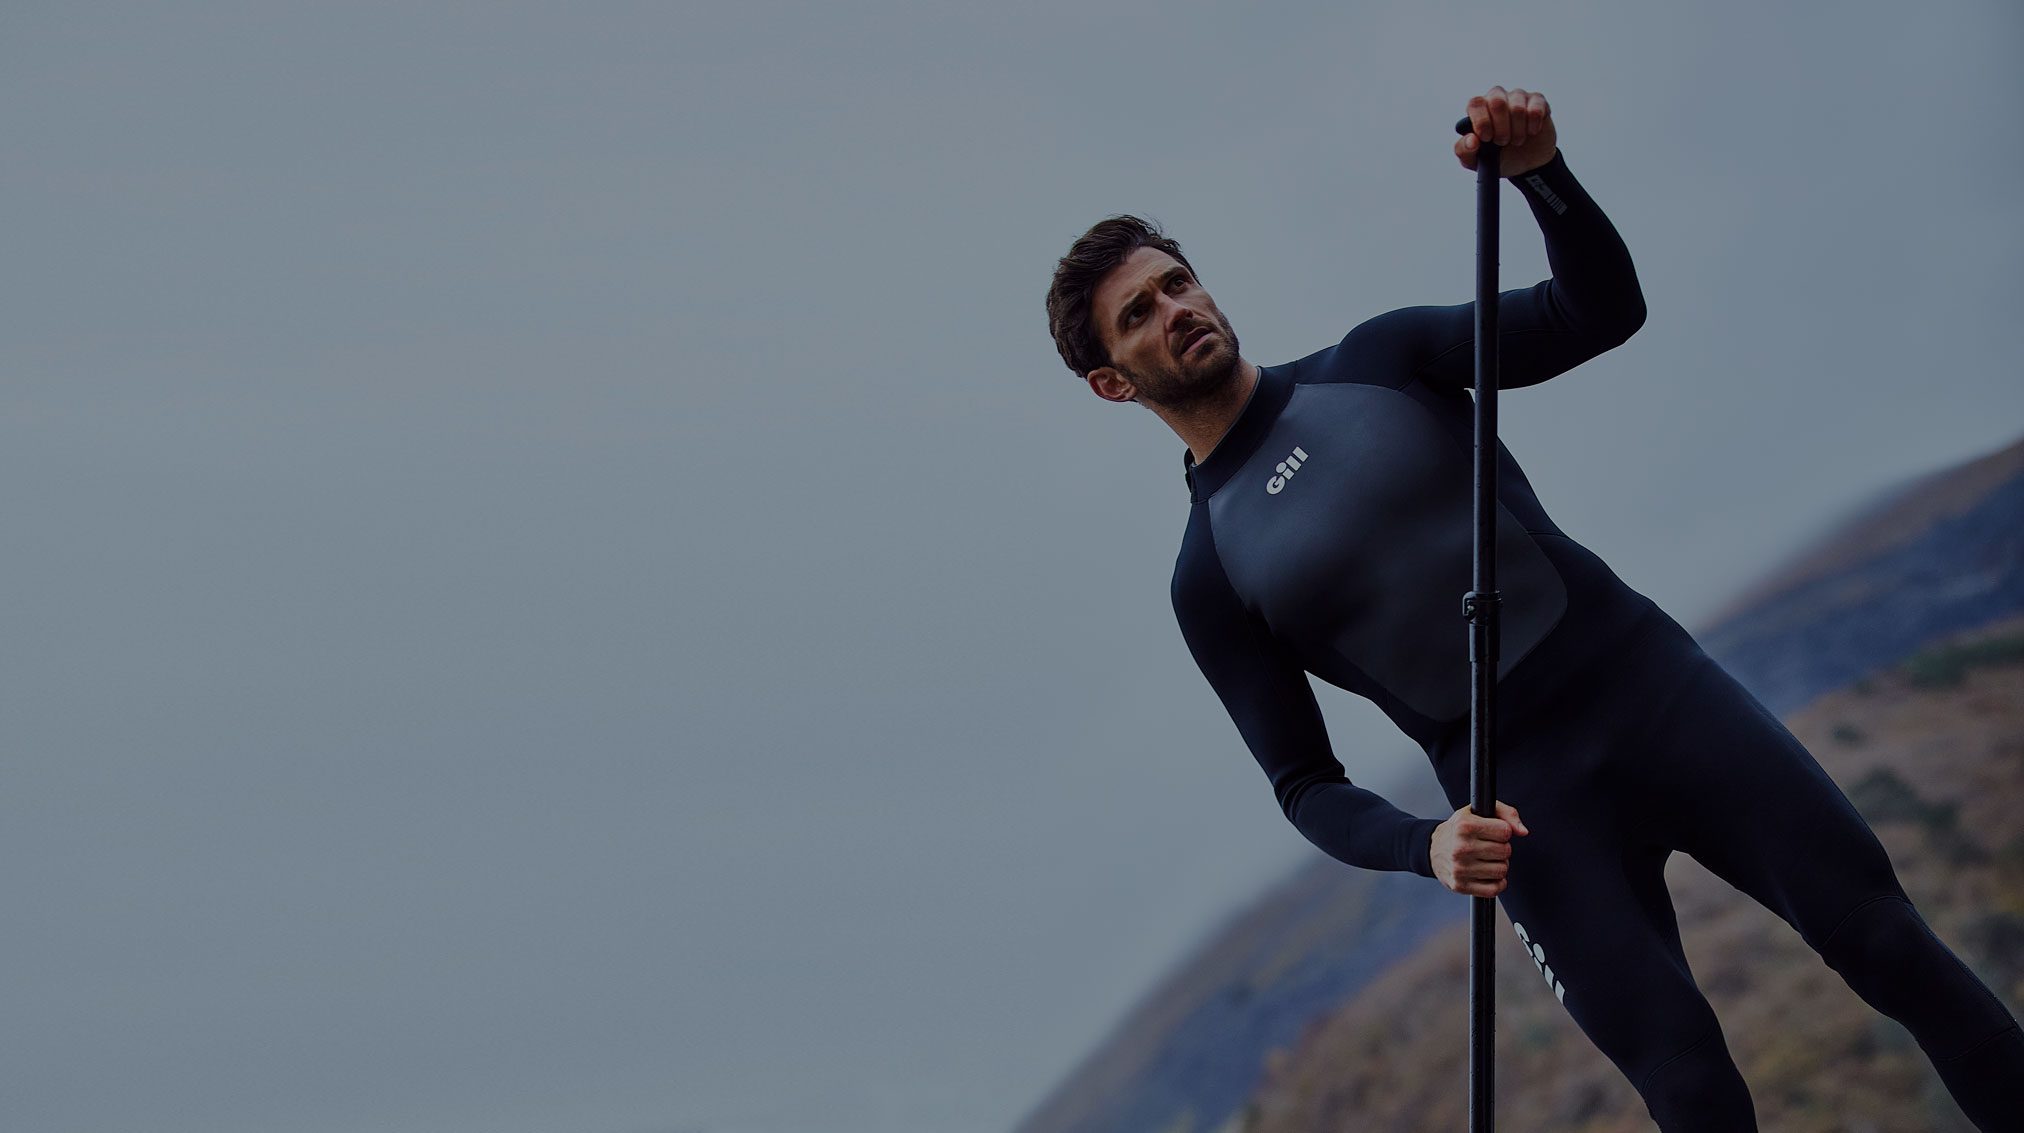 wetsuit-buying-guide-blog-landing-hero